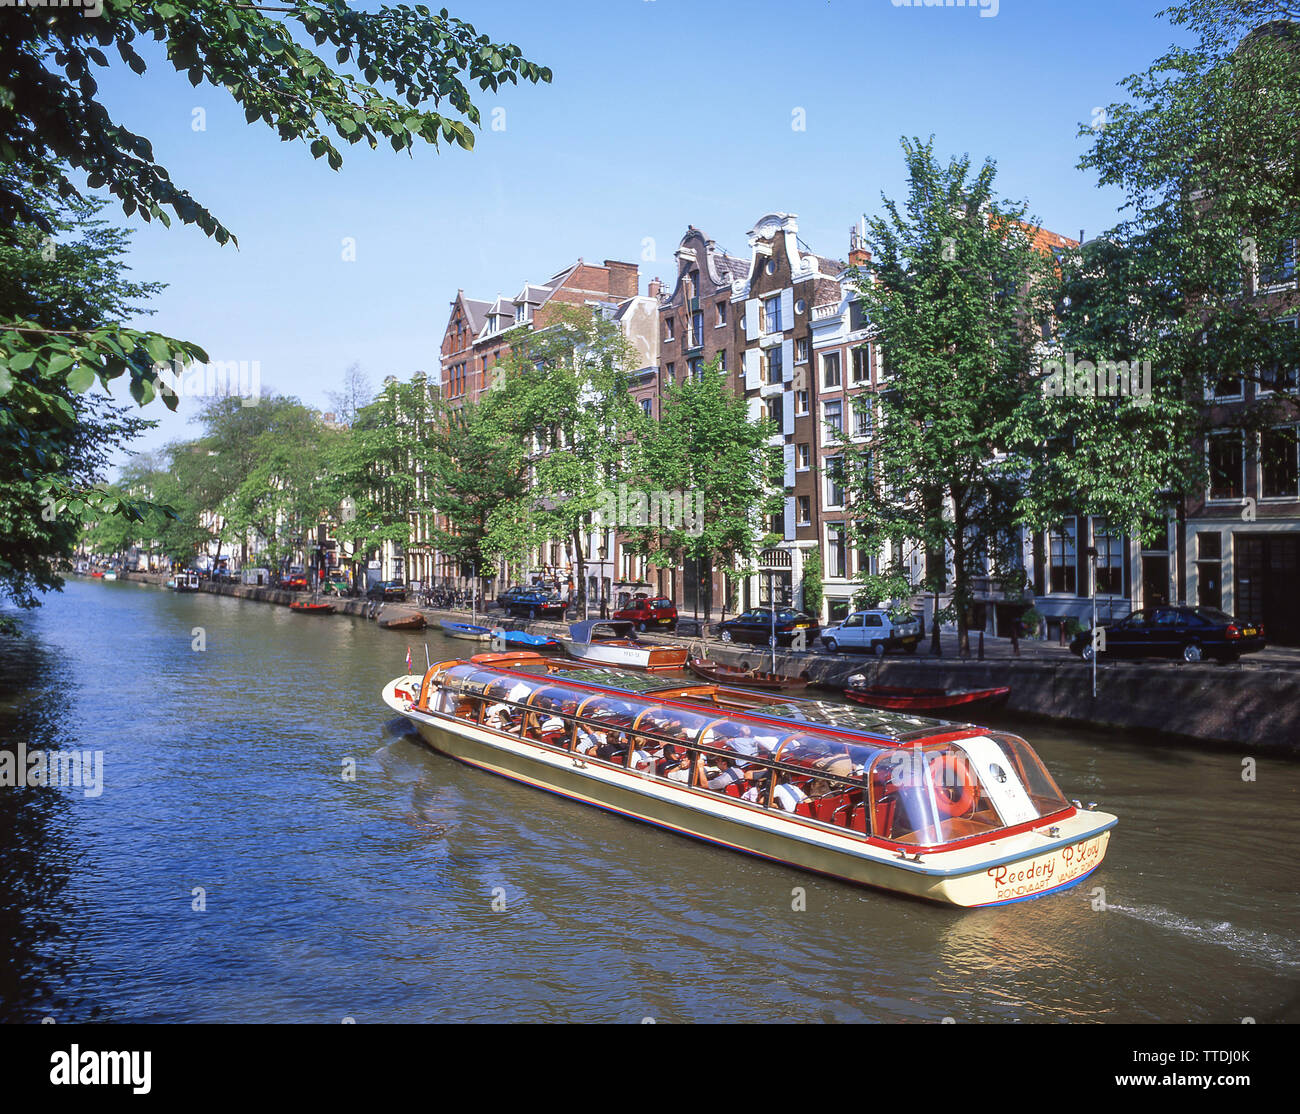 Canal de excursión en barco, Grachtengordel, Amsterdam, Noord-Holland, Reino de los Países Bajos Foto de stock